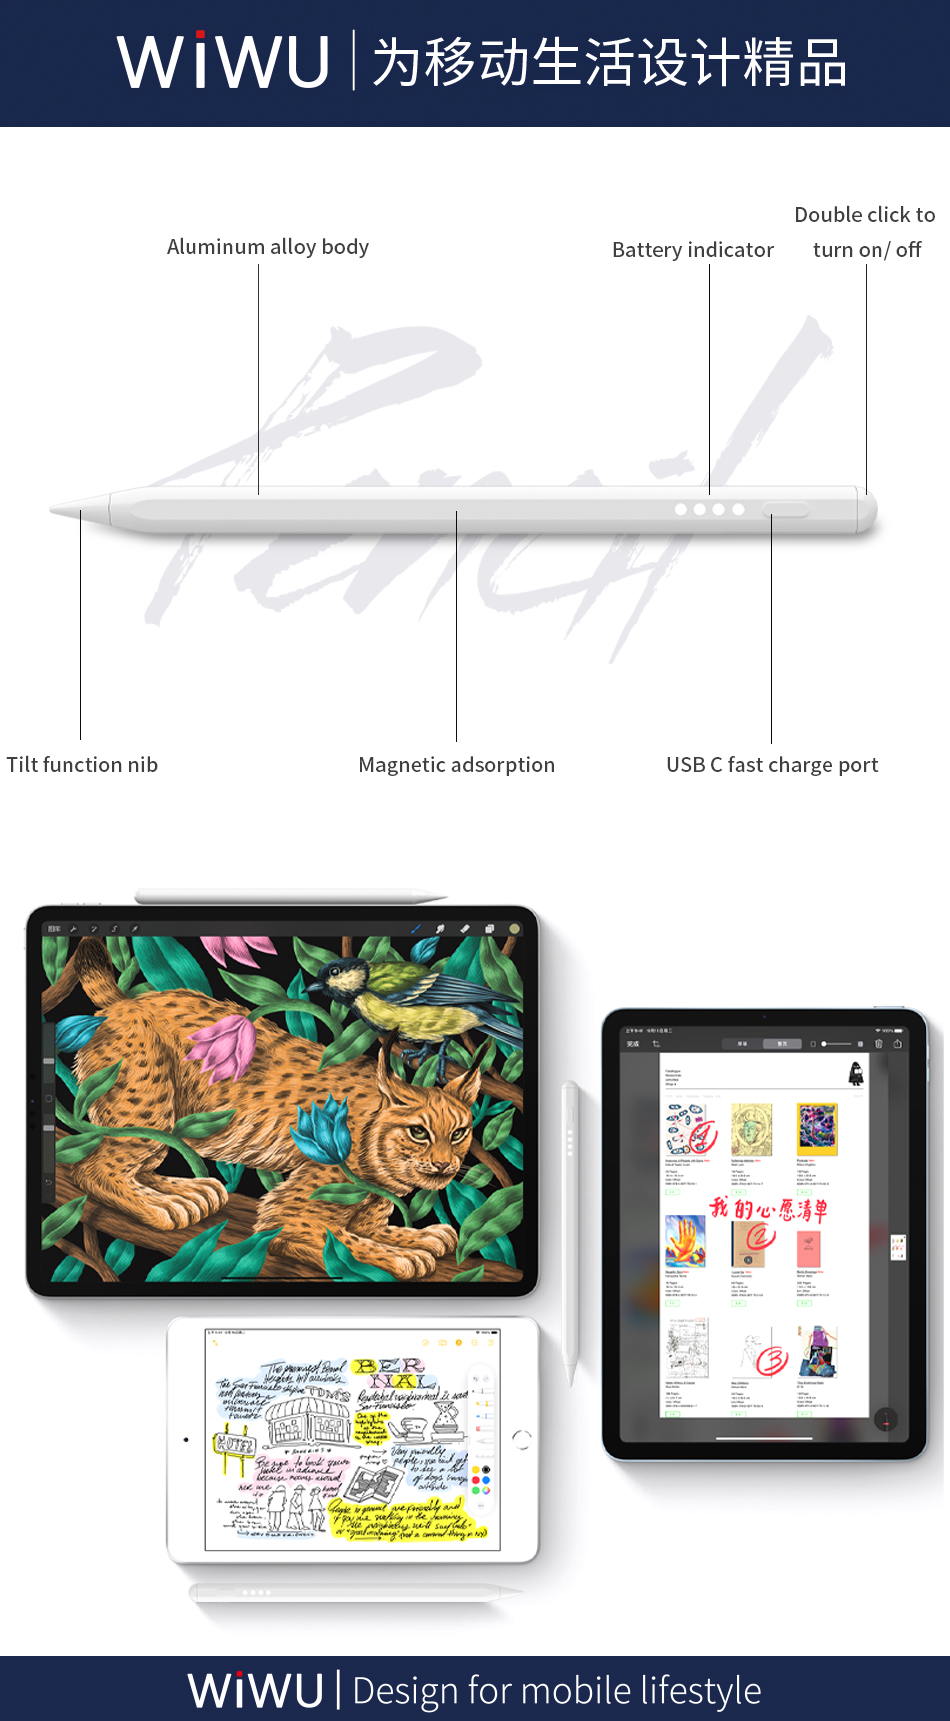 Funda Rígida para Accesorios, iPad Pro y Tablet de 11 Pulgadas Wiwu WIWU